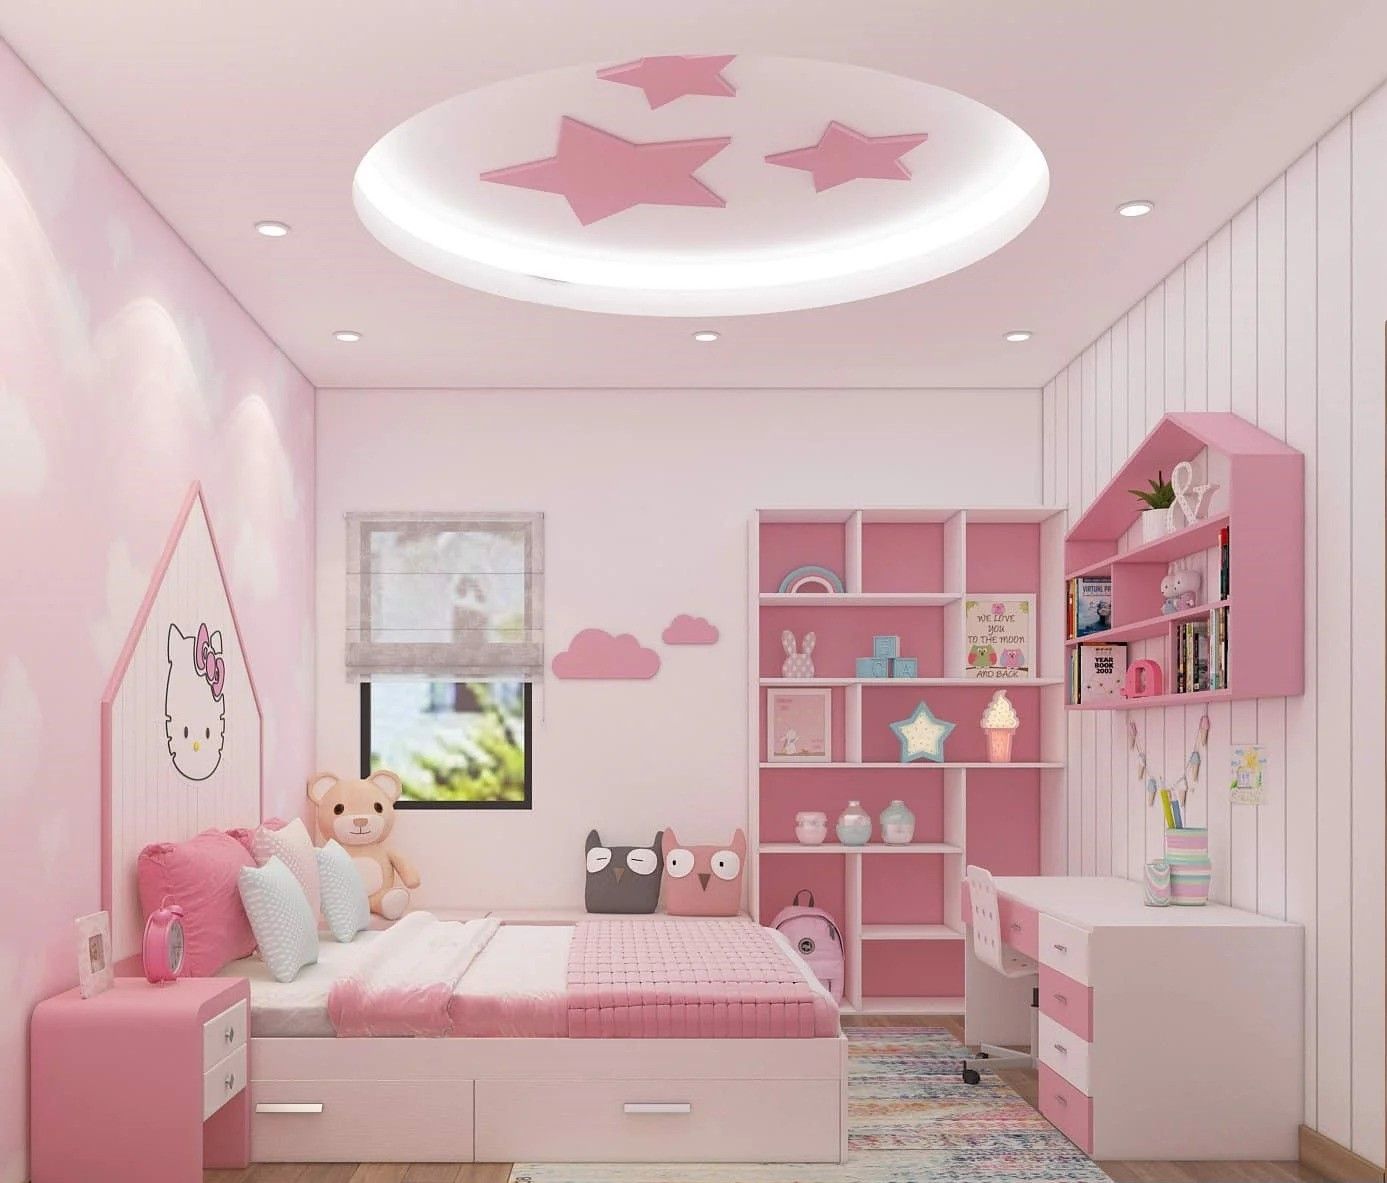 Phòng ngủ cho bé gái trần thiết kế với màu hồng pastel